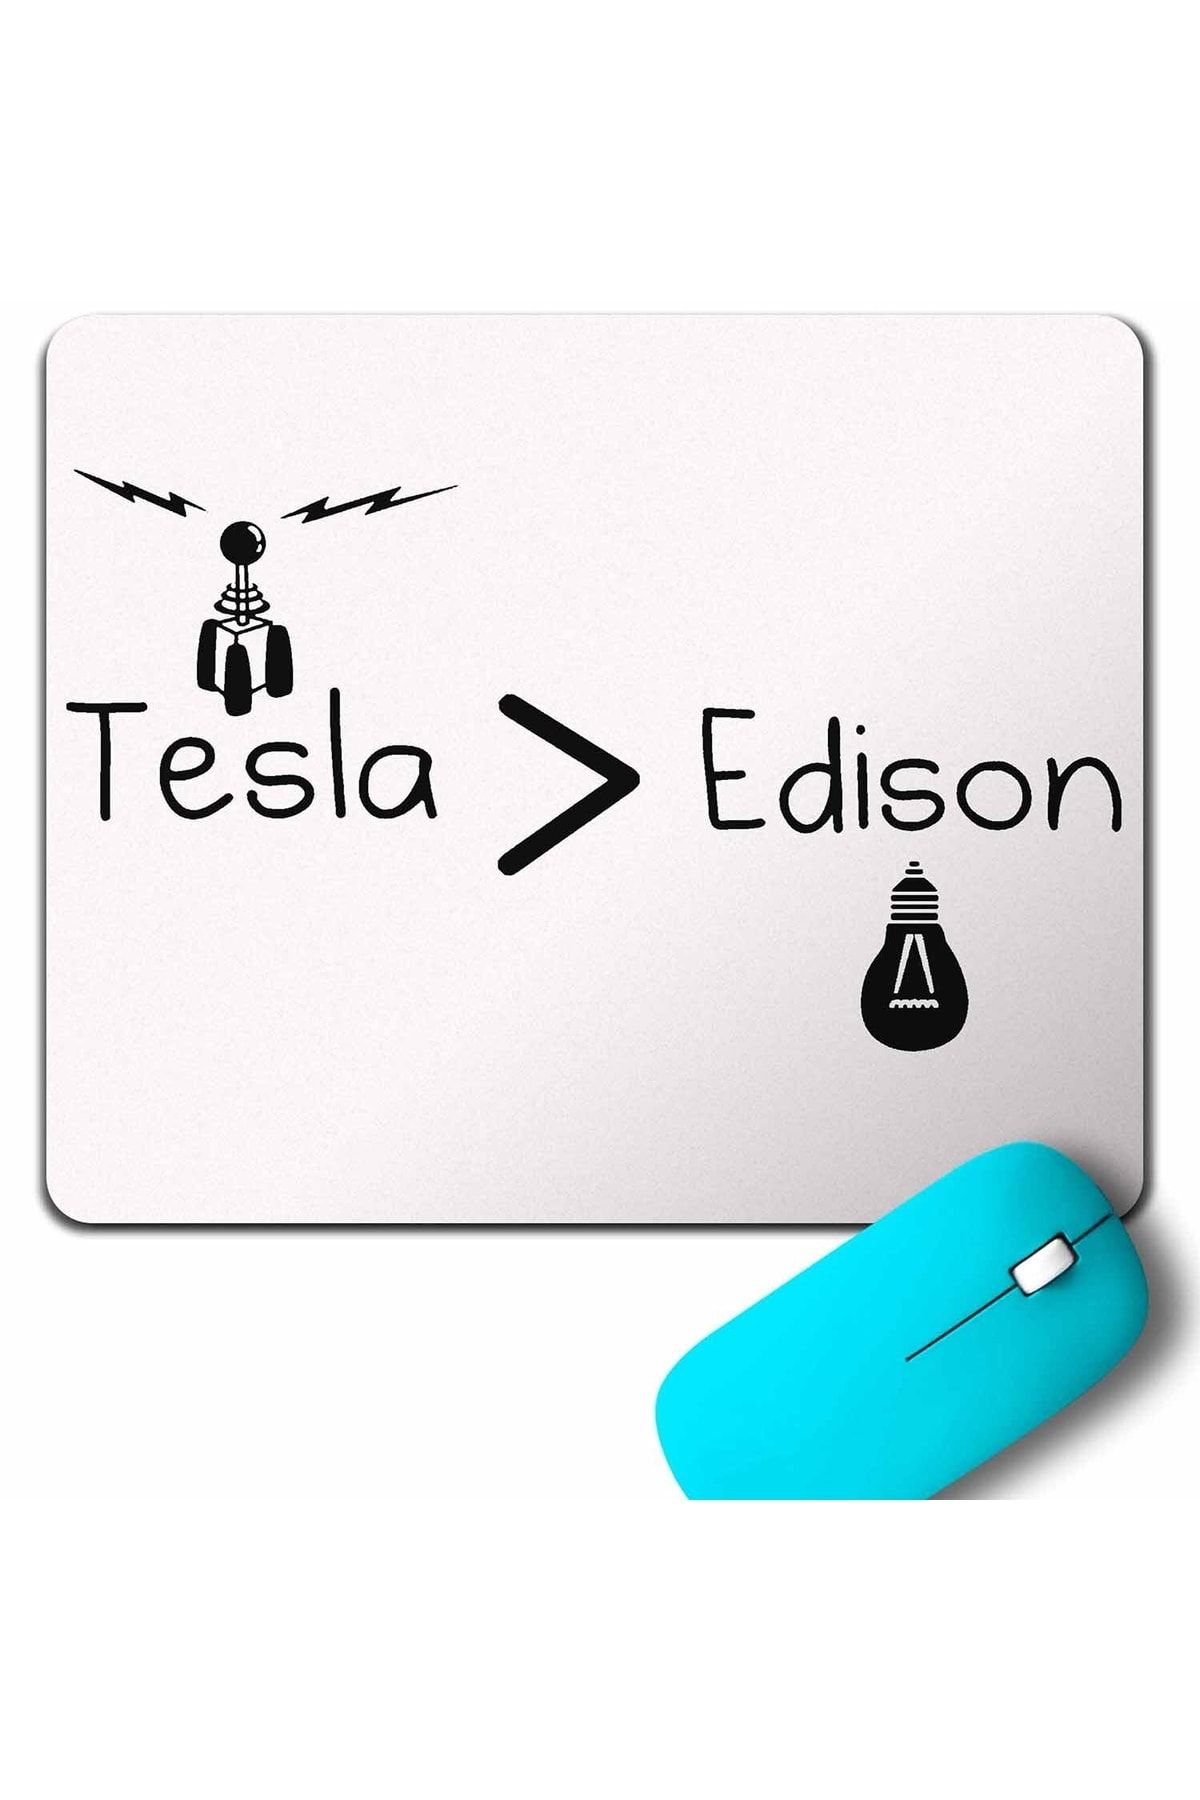 Kendim Seçtim Nikola Tesla Büyüktür Edison Doğru Ac Dc Akım Mouse Pad